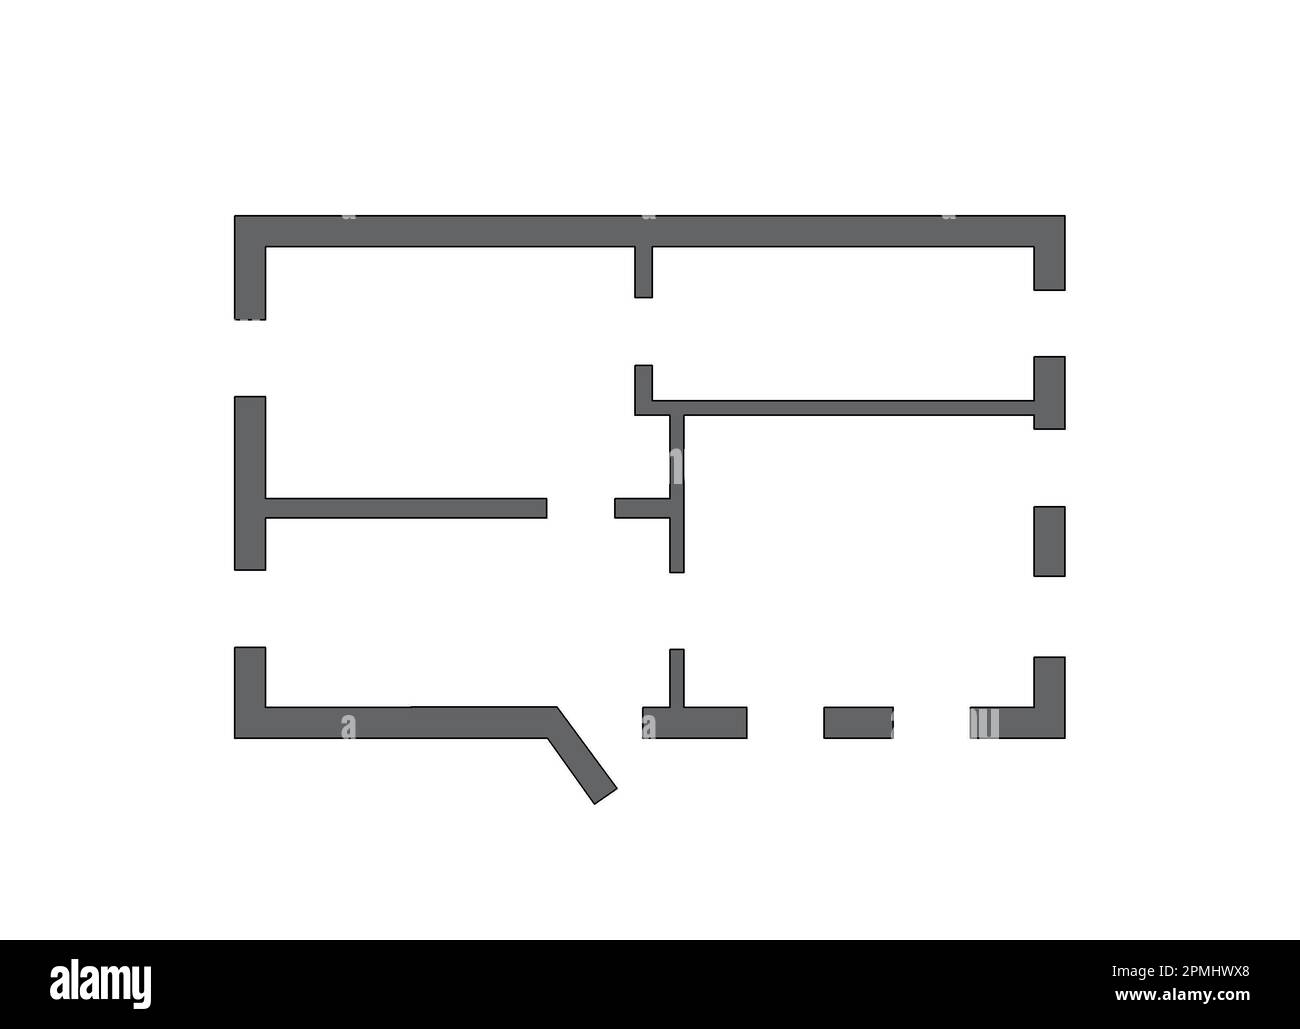 2D Grundriss schwarz weiß Grundriss Grundriss Grundriss Skizze Stock Illustration. Grundriss von Hand skizzieren. Zeichnung eines Wohnungsflachbodens Stockfoto